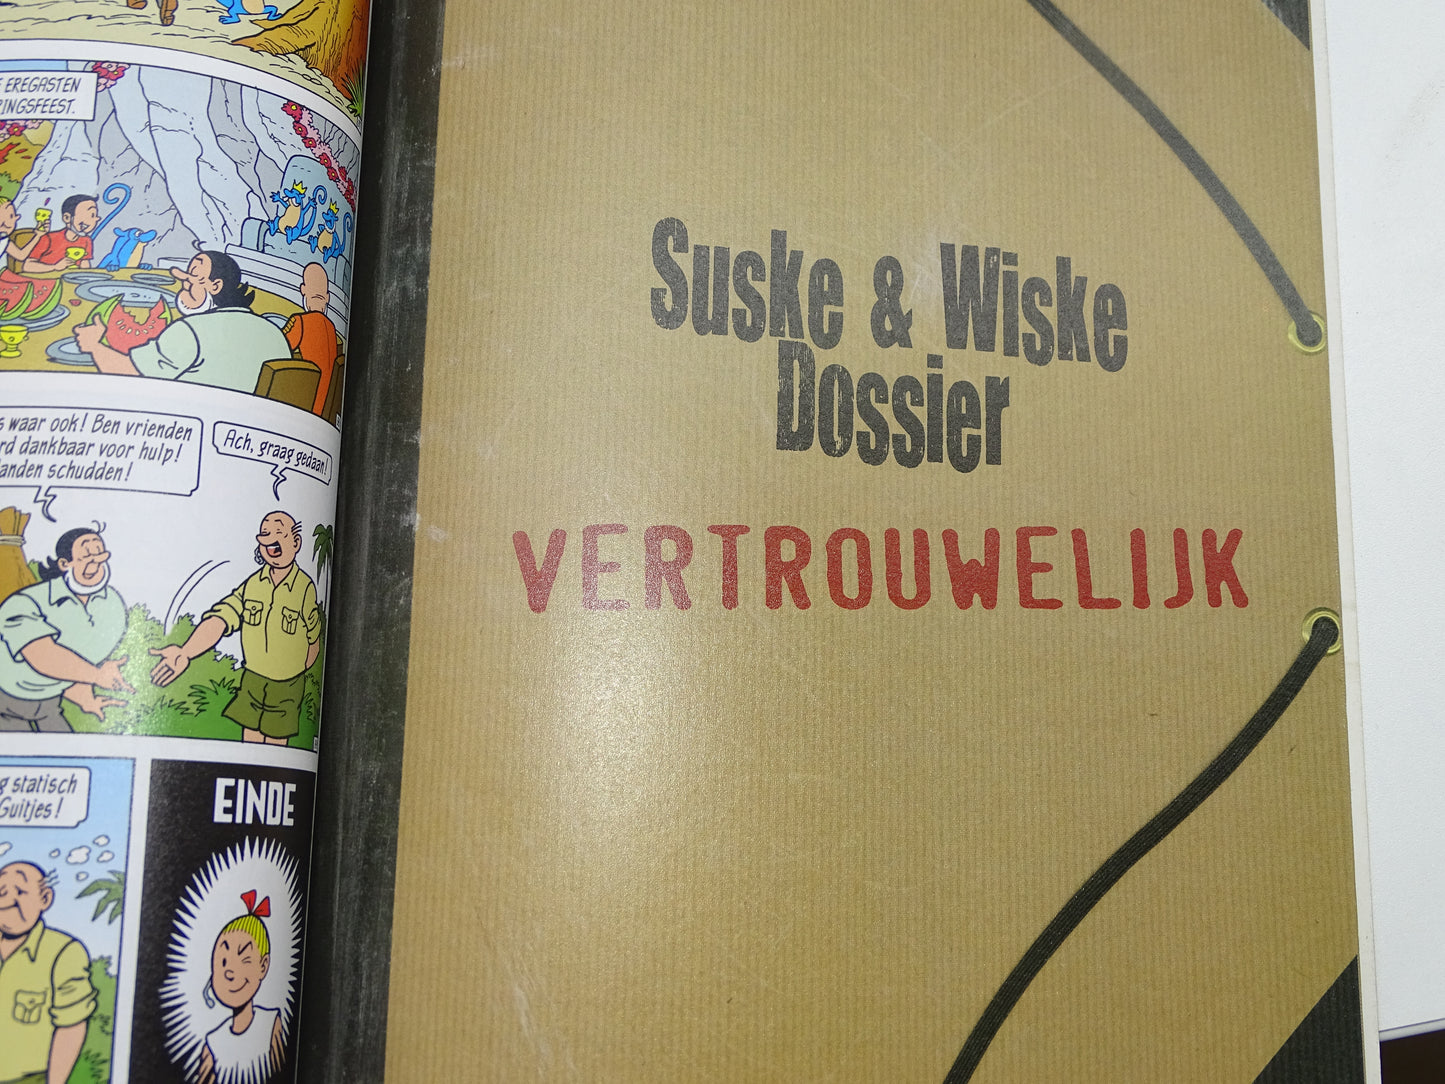 Strip: Suske En Wiske, De Energieke Guiten, Electrabel, 2008